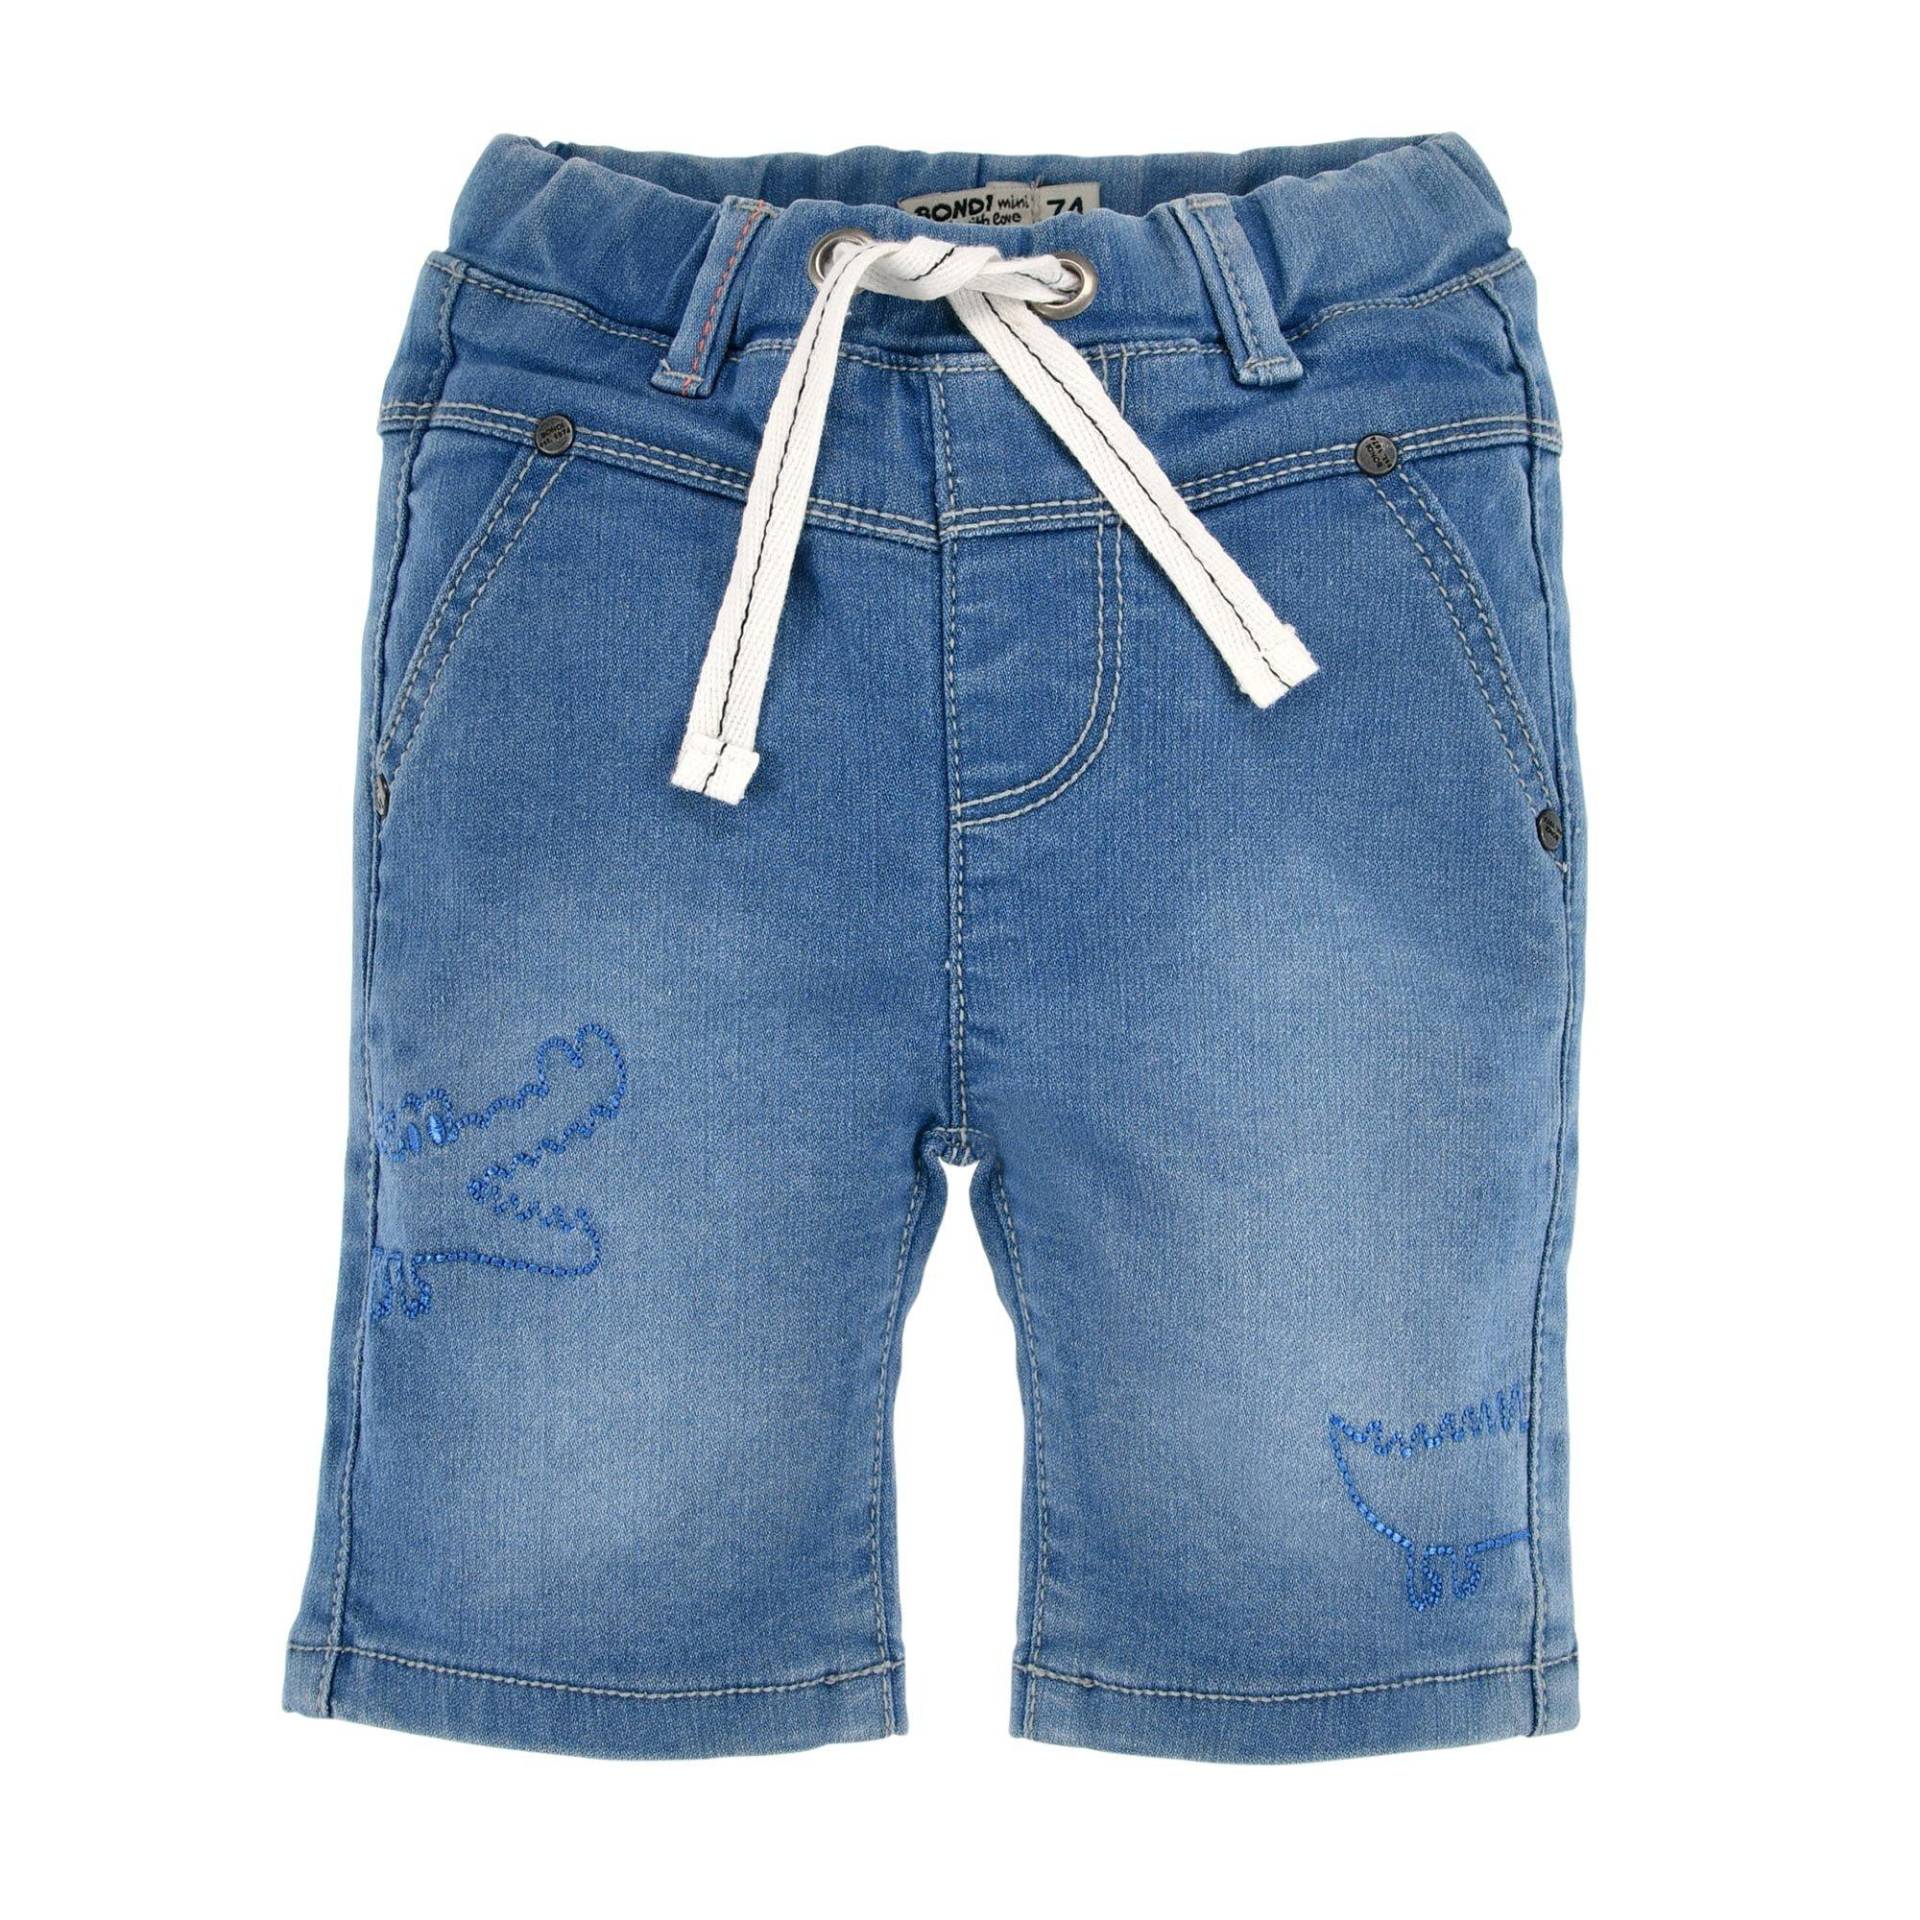 Kleinkinder Jeans Shorts Kroko Jungen Blau 74 von Bondi